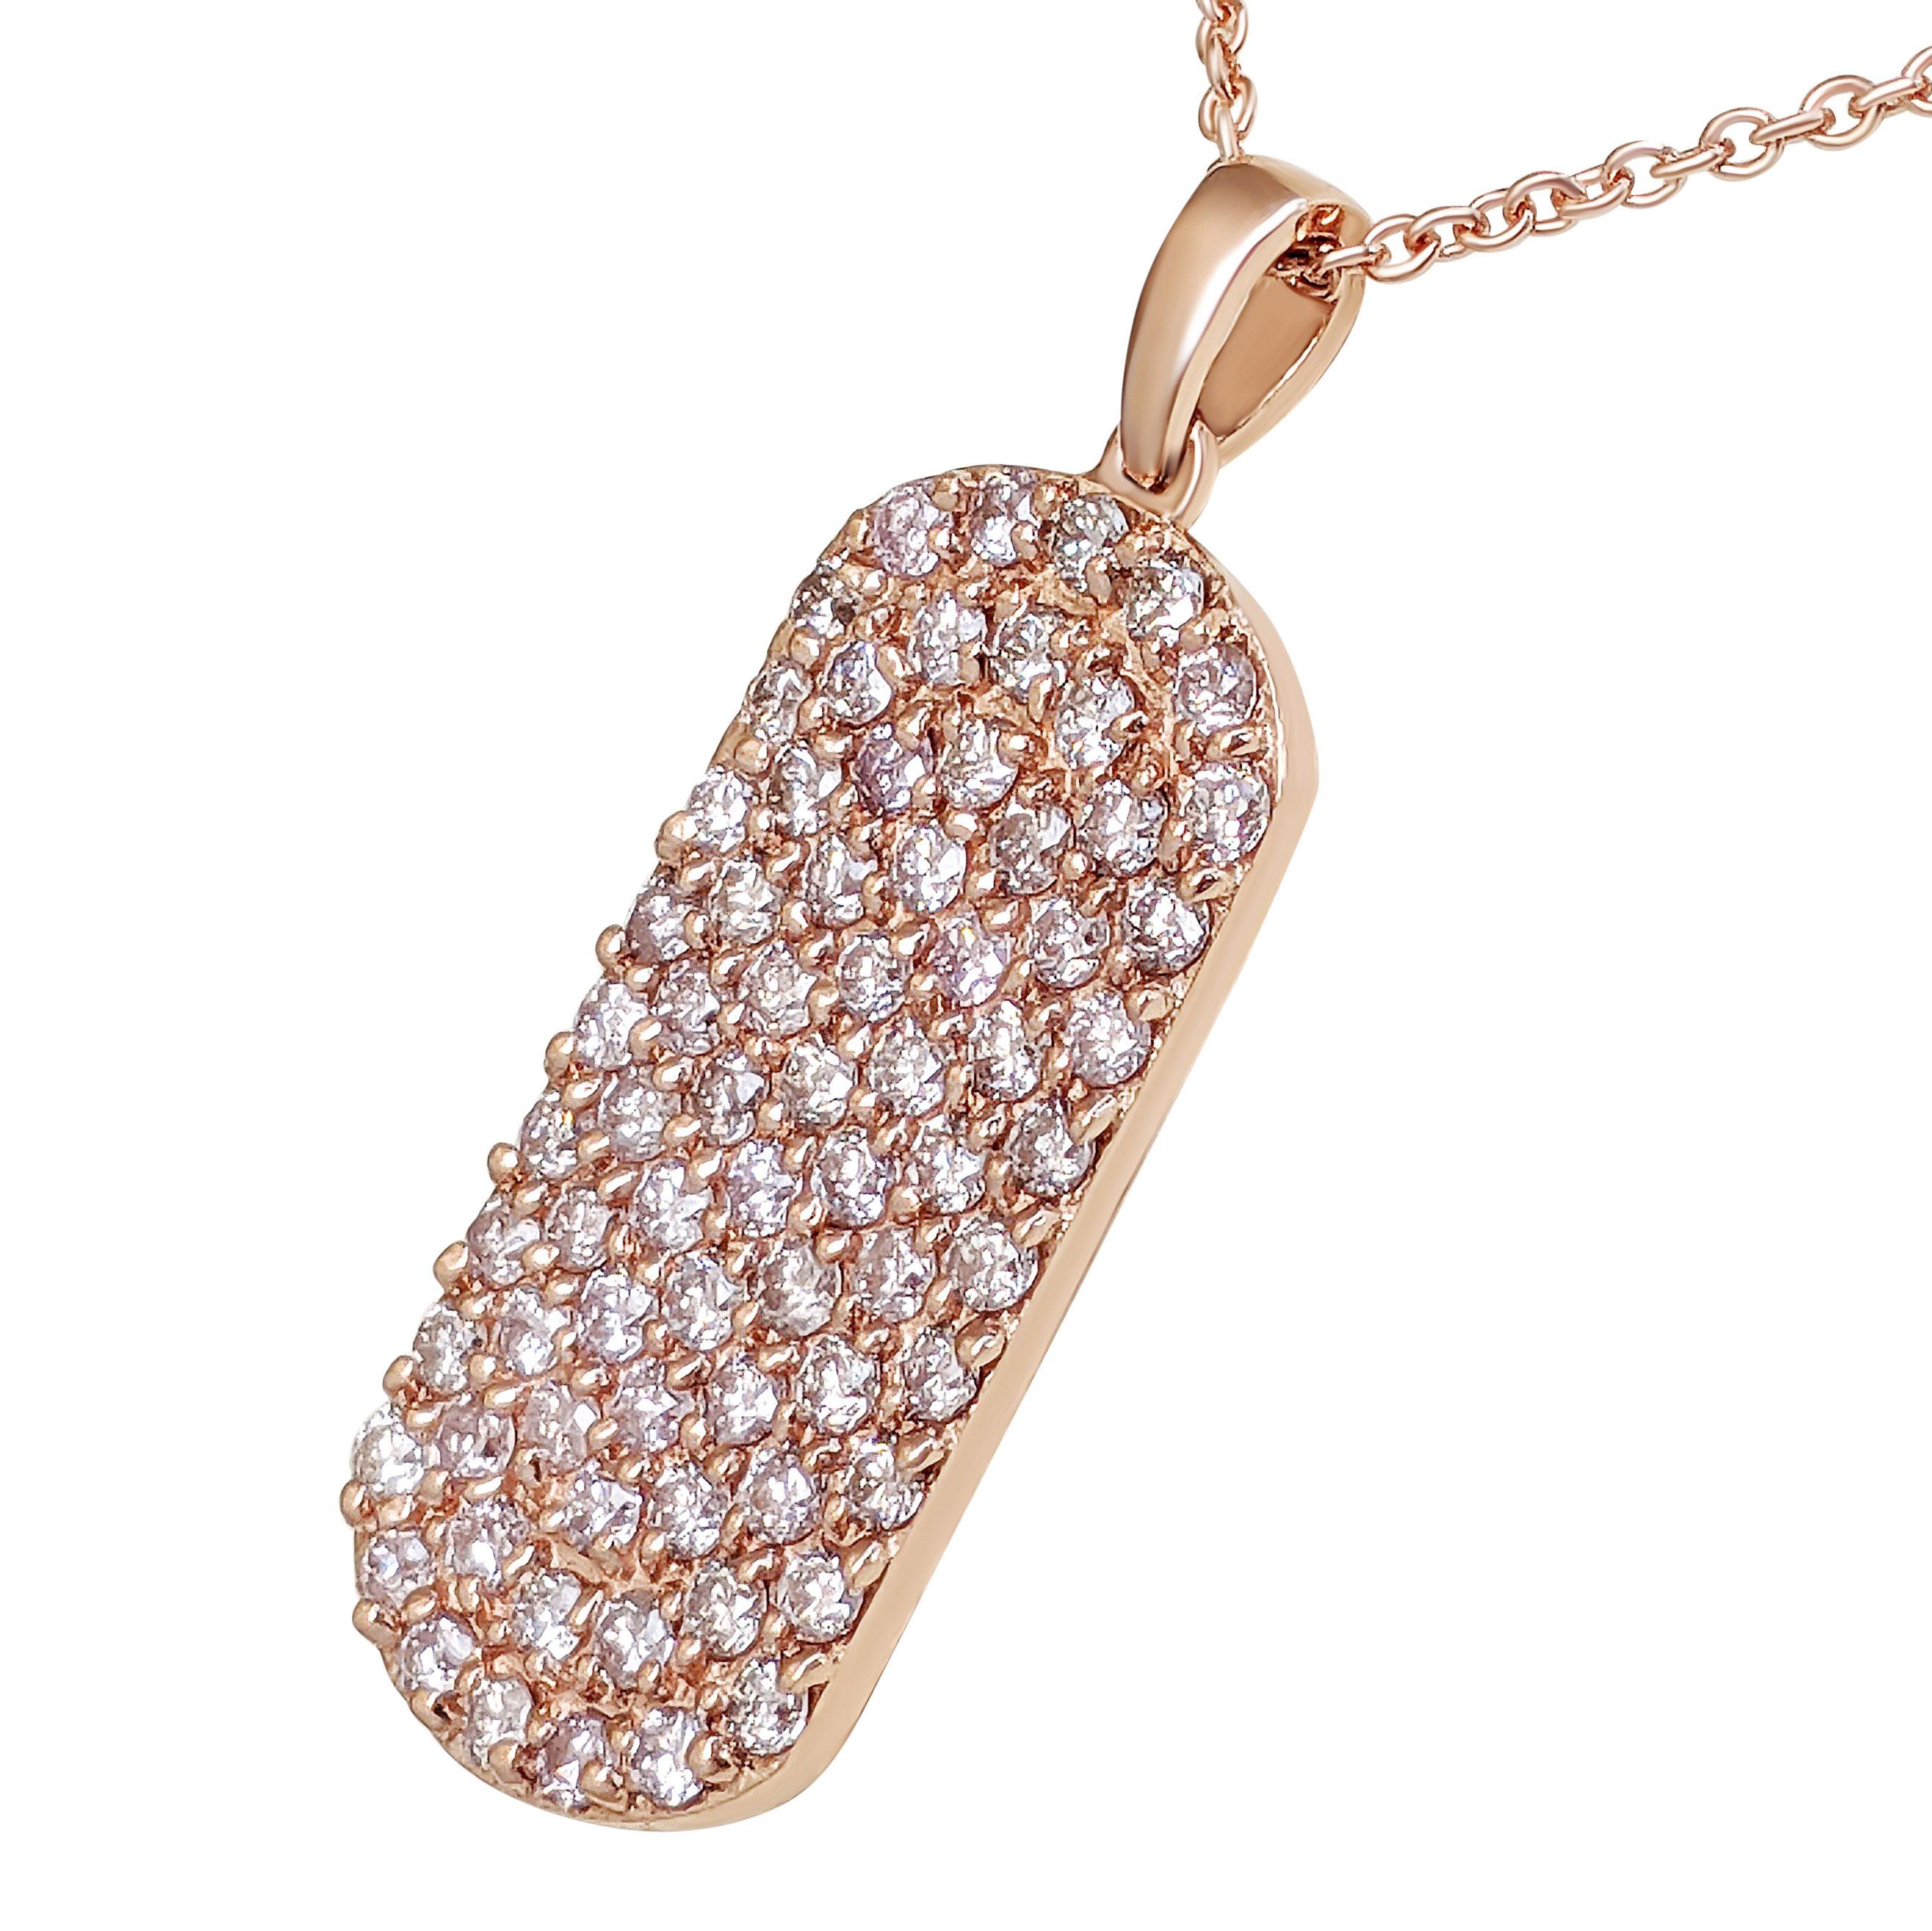 Art Deco NO RESERVE! 1.10Ct Fancy Pink Diamond 14 kt. Gold Pendant Necklace For Sale